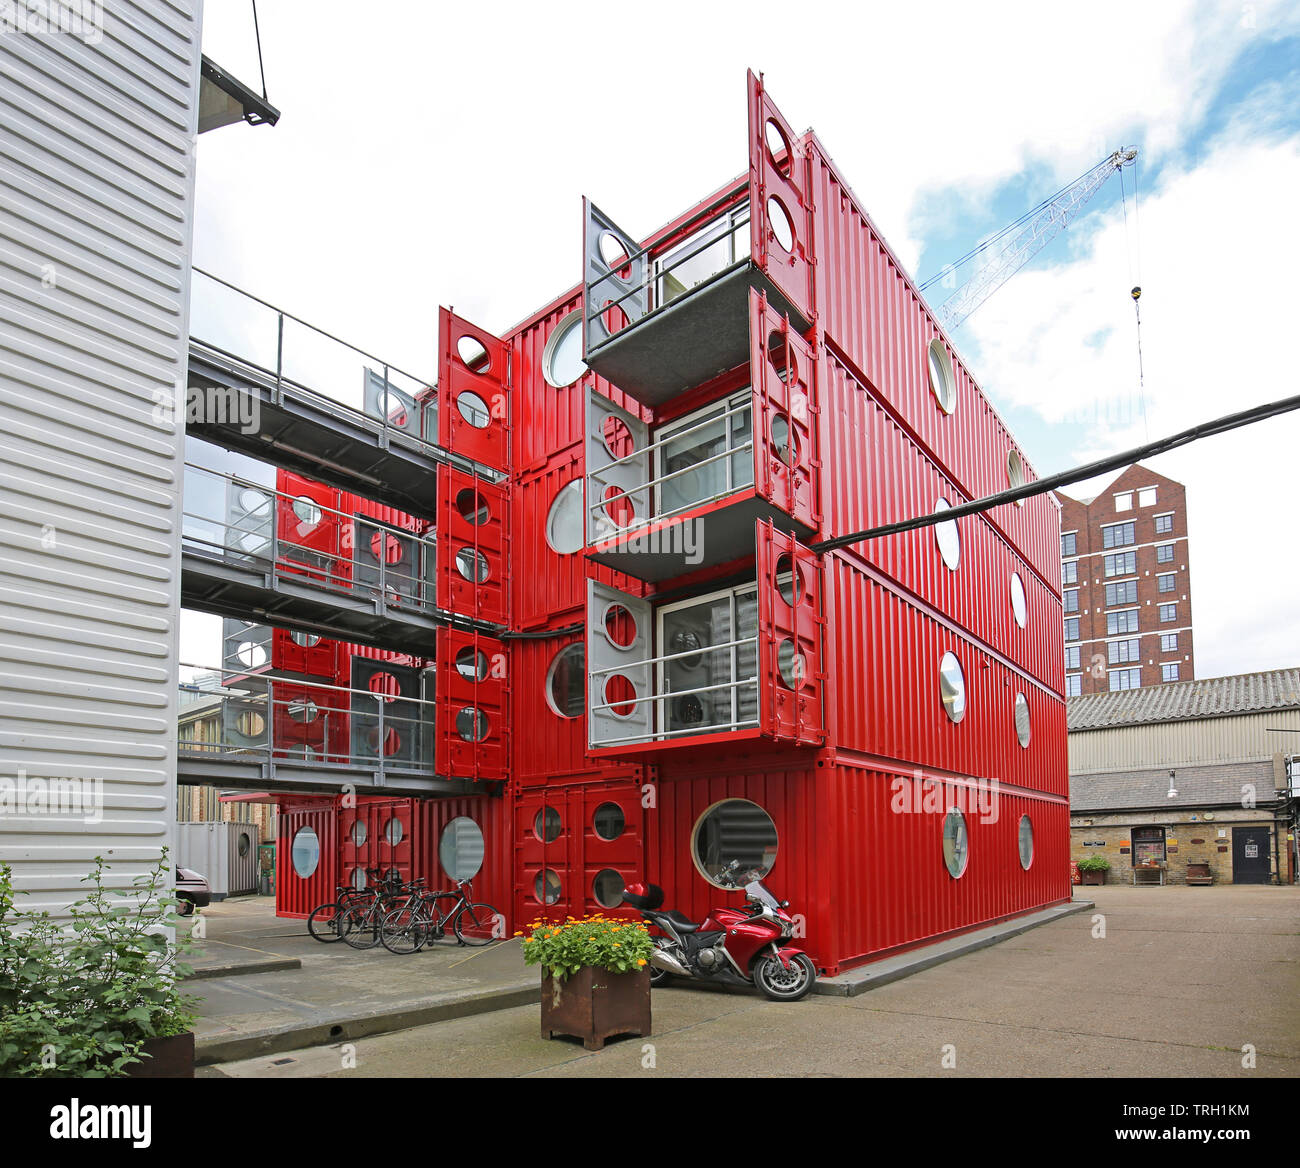 Container City 1 at Trinity Buoy Wharf, London, UK. Une collection d'espaces de vie et de travail construit à partir de conteneurs empilés. Banque D'Images